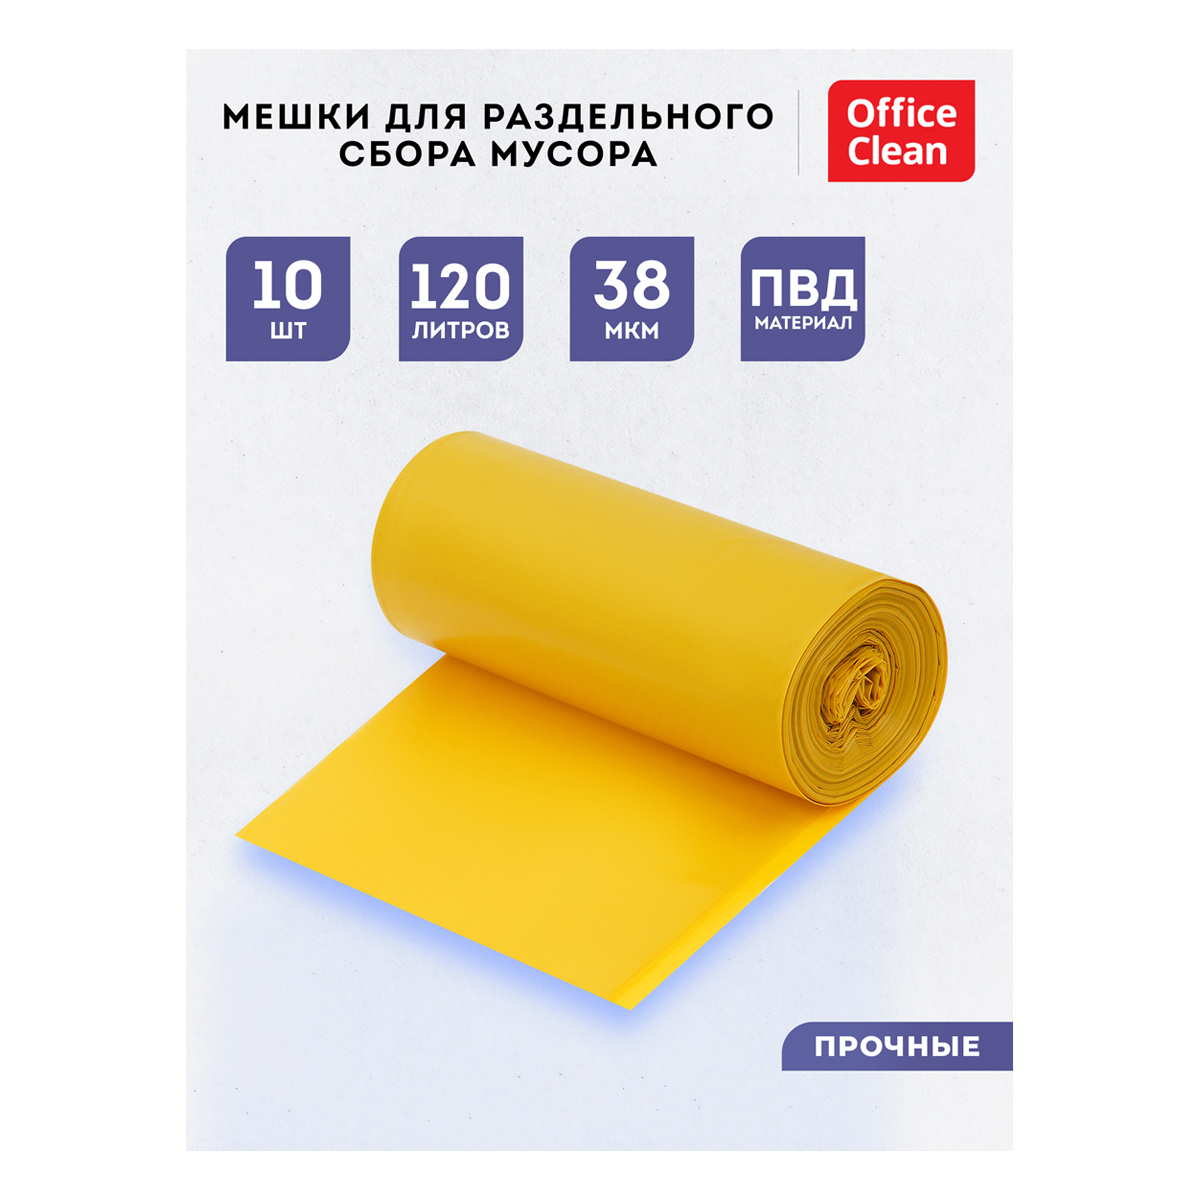 Мешки для раздельного сбора мусора 120л OfficeClean ПВД, 70*108см, 38мкм, 10шт., прочные, желтые, в 